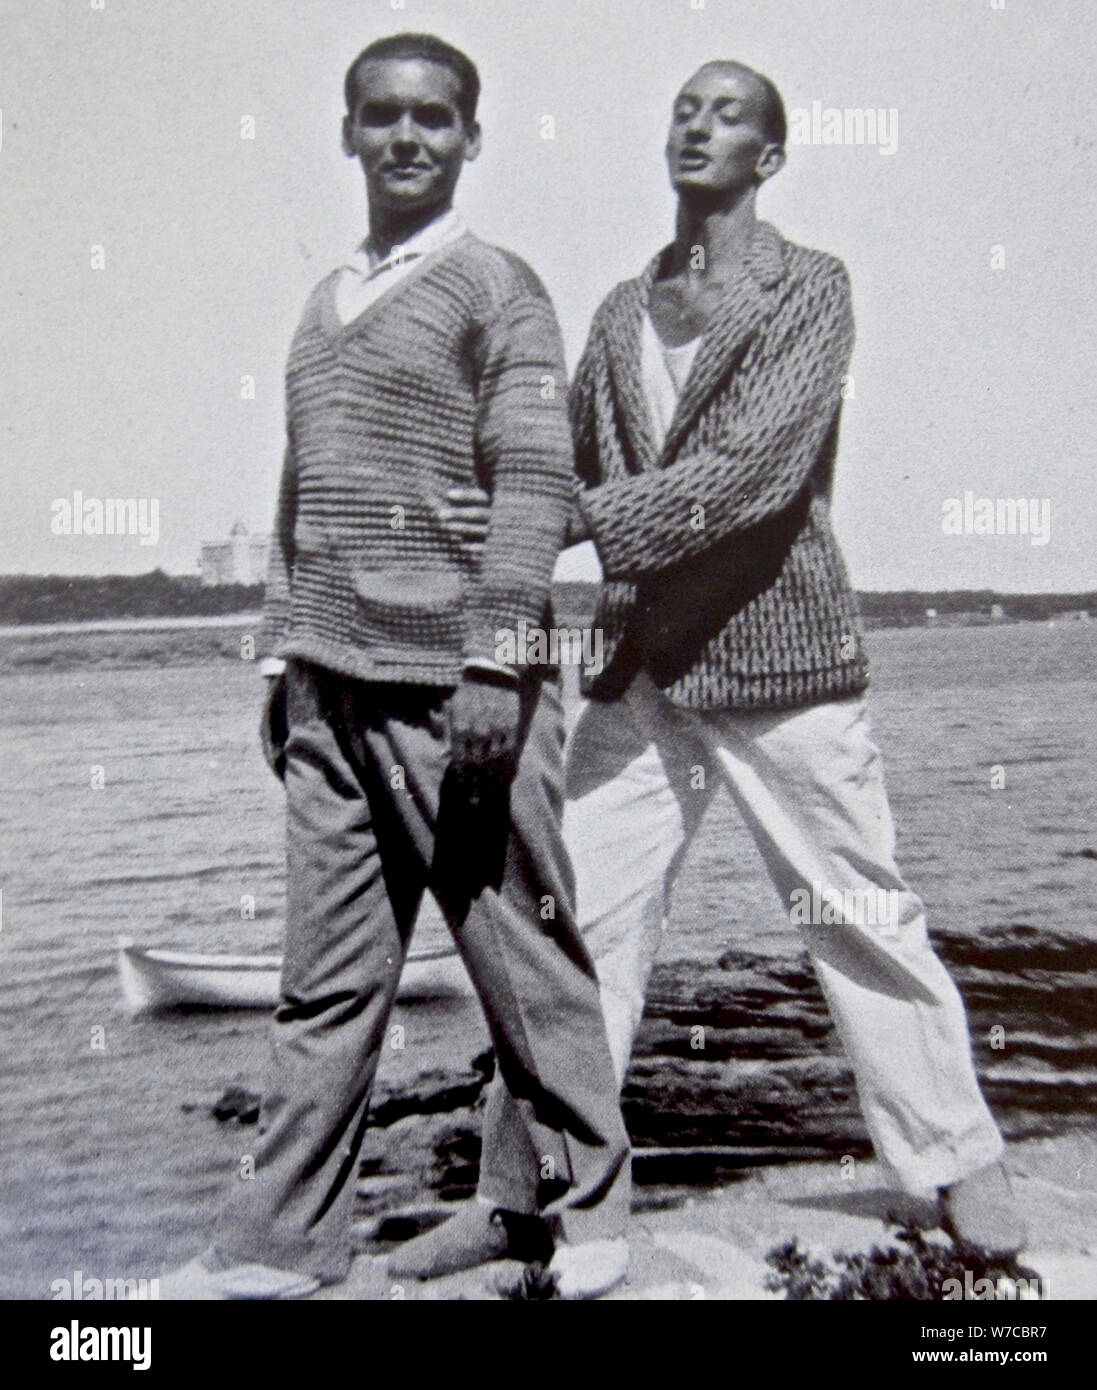 Salvador Dalí and Federico García Lorca in Cadaqués. Stock Photo